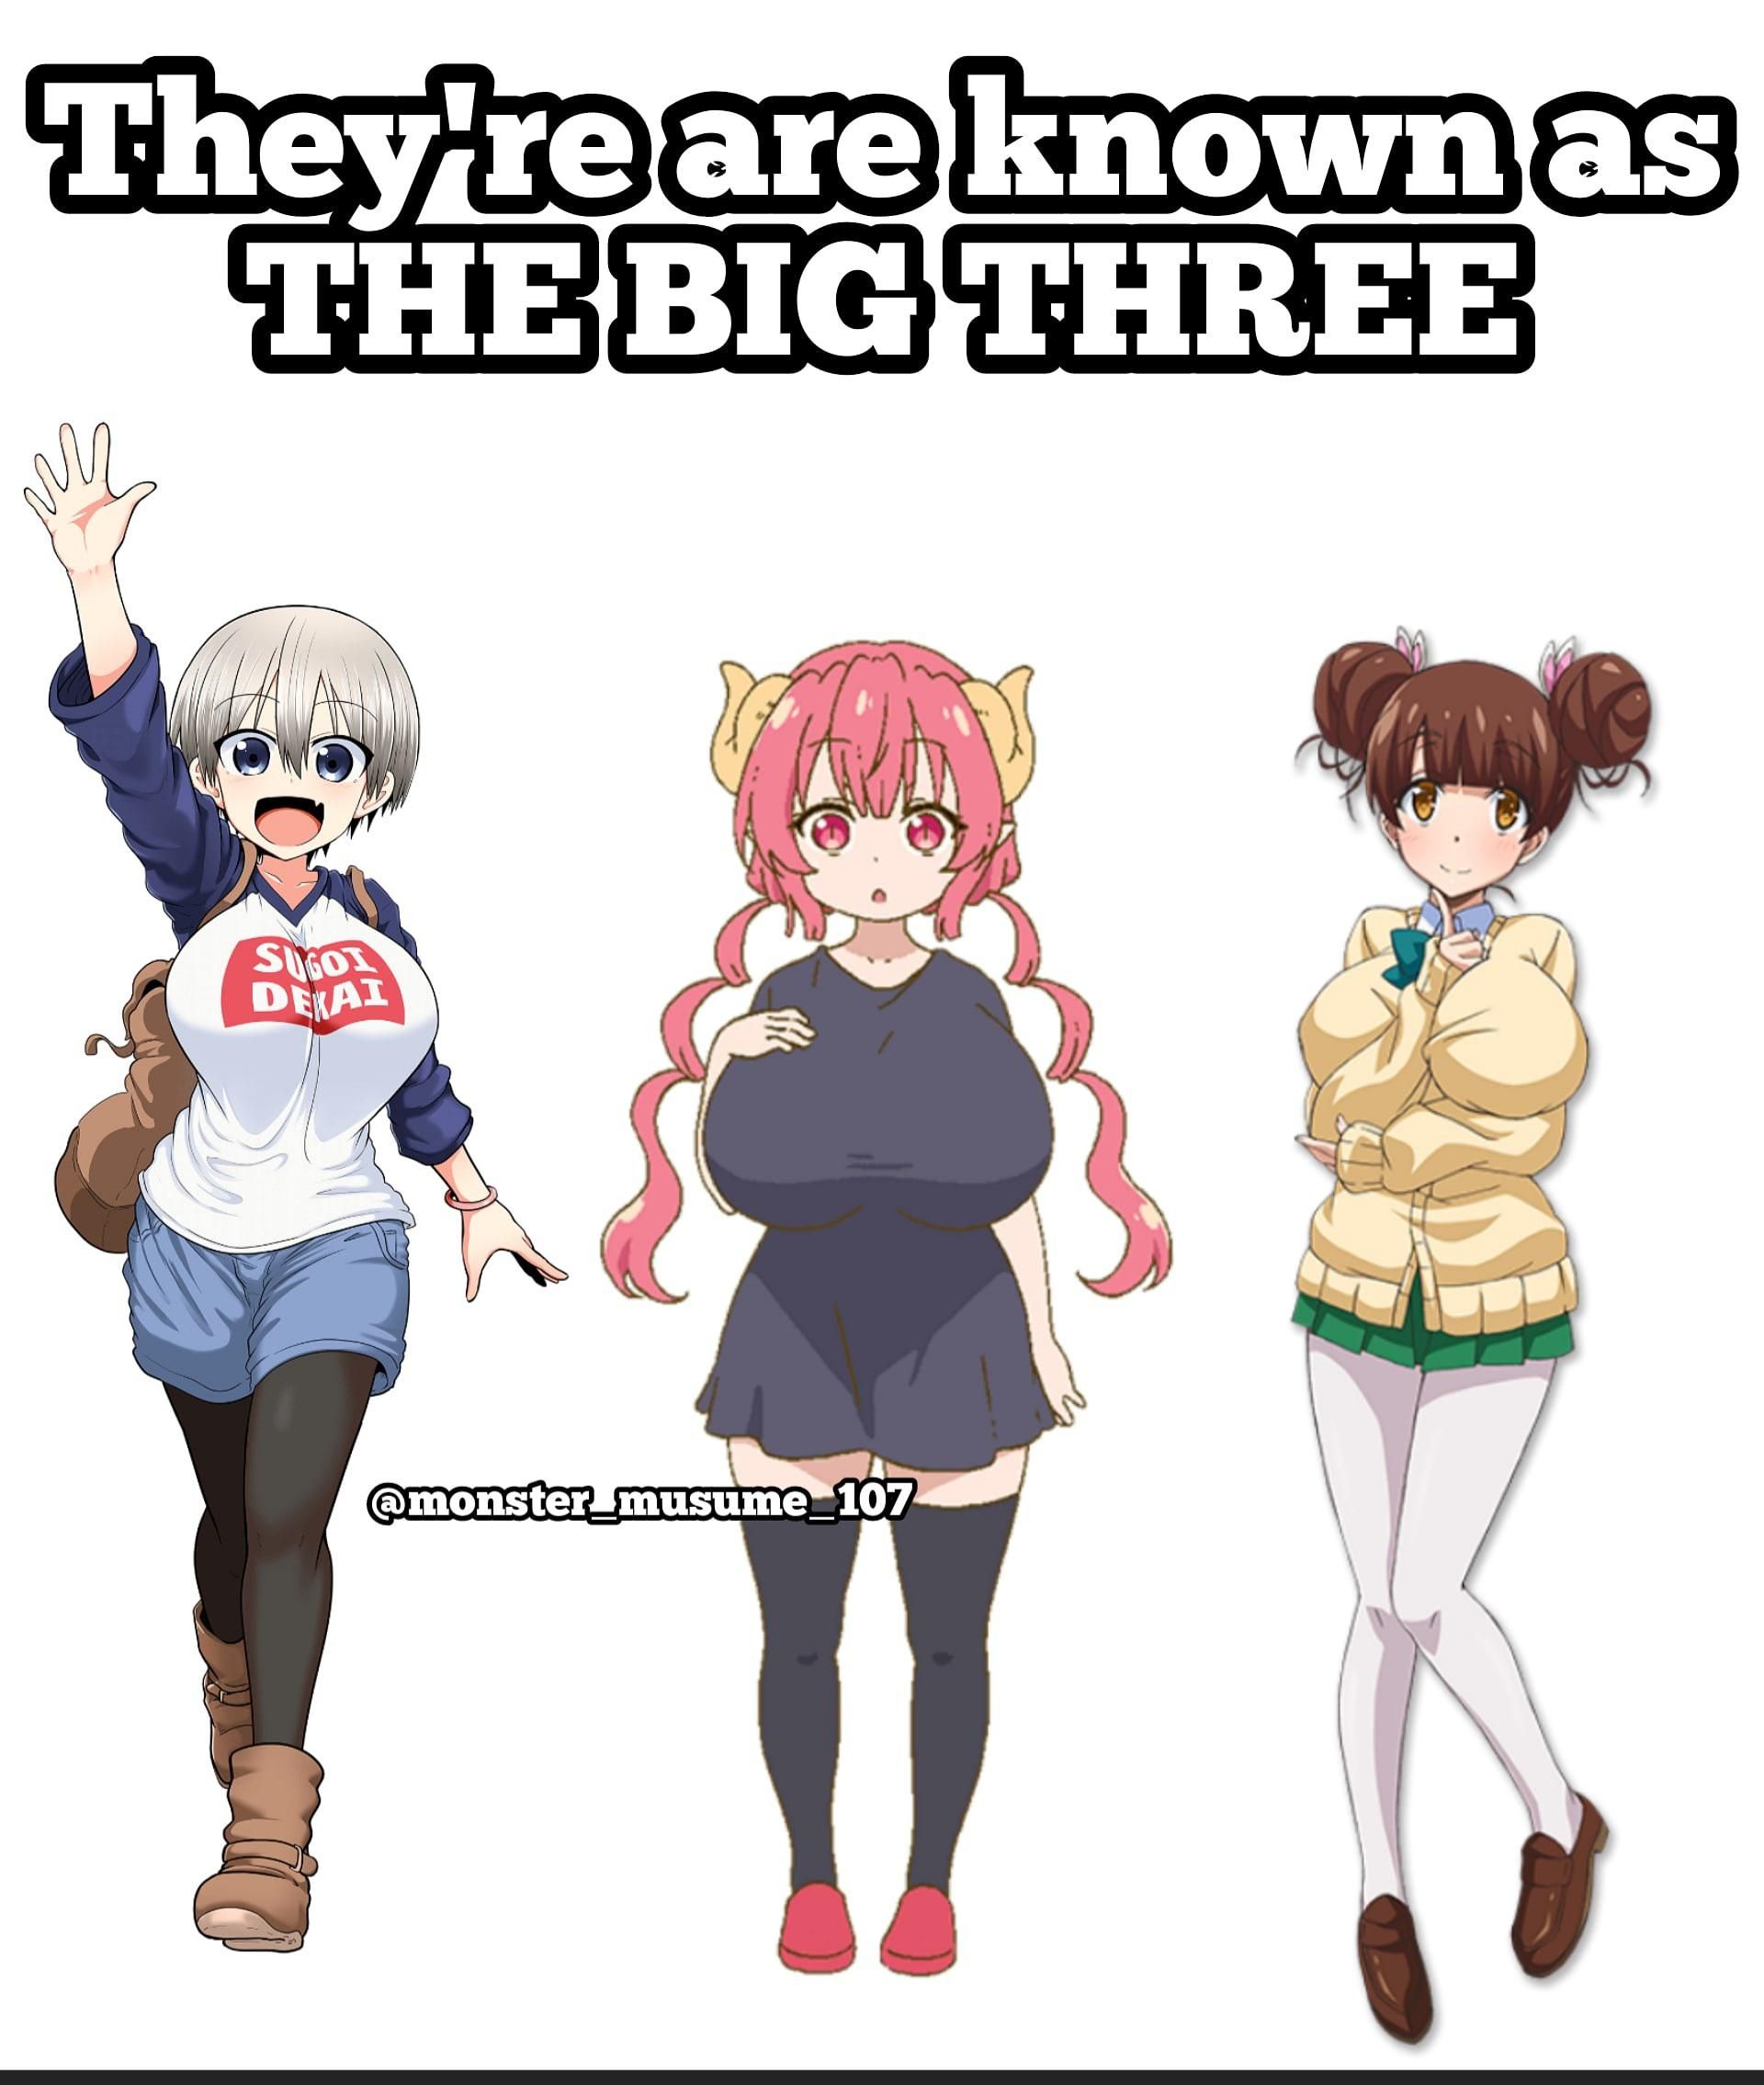 Legendary three